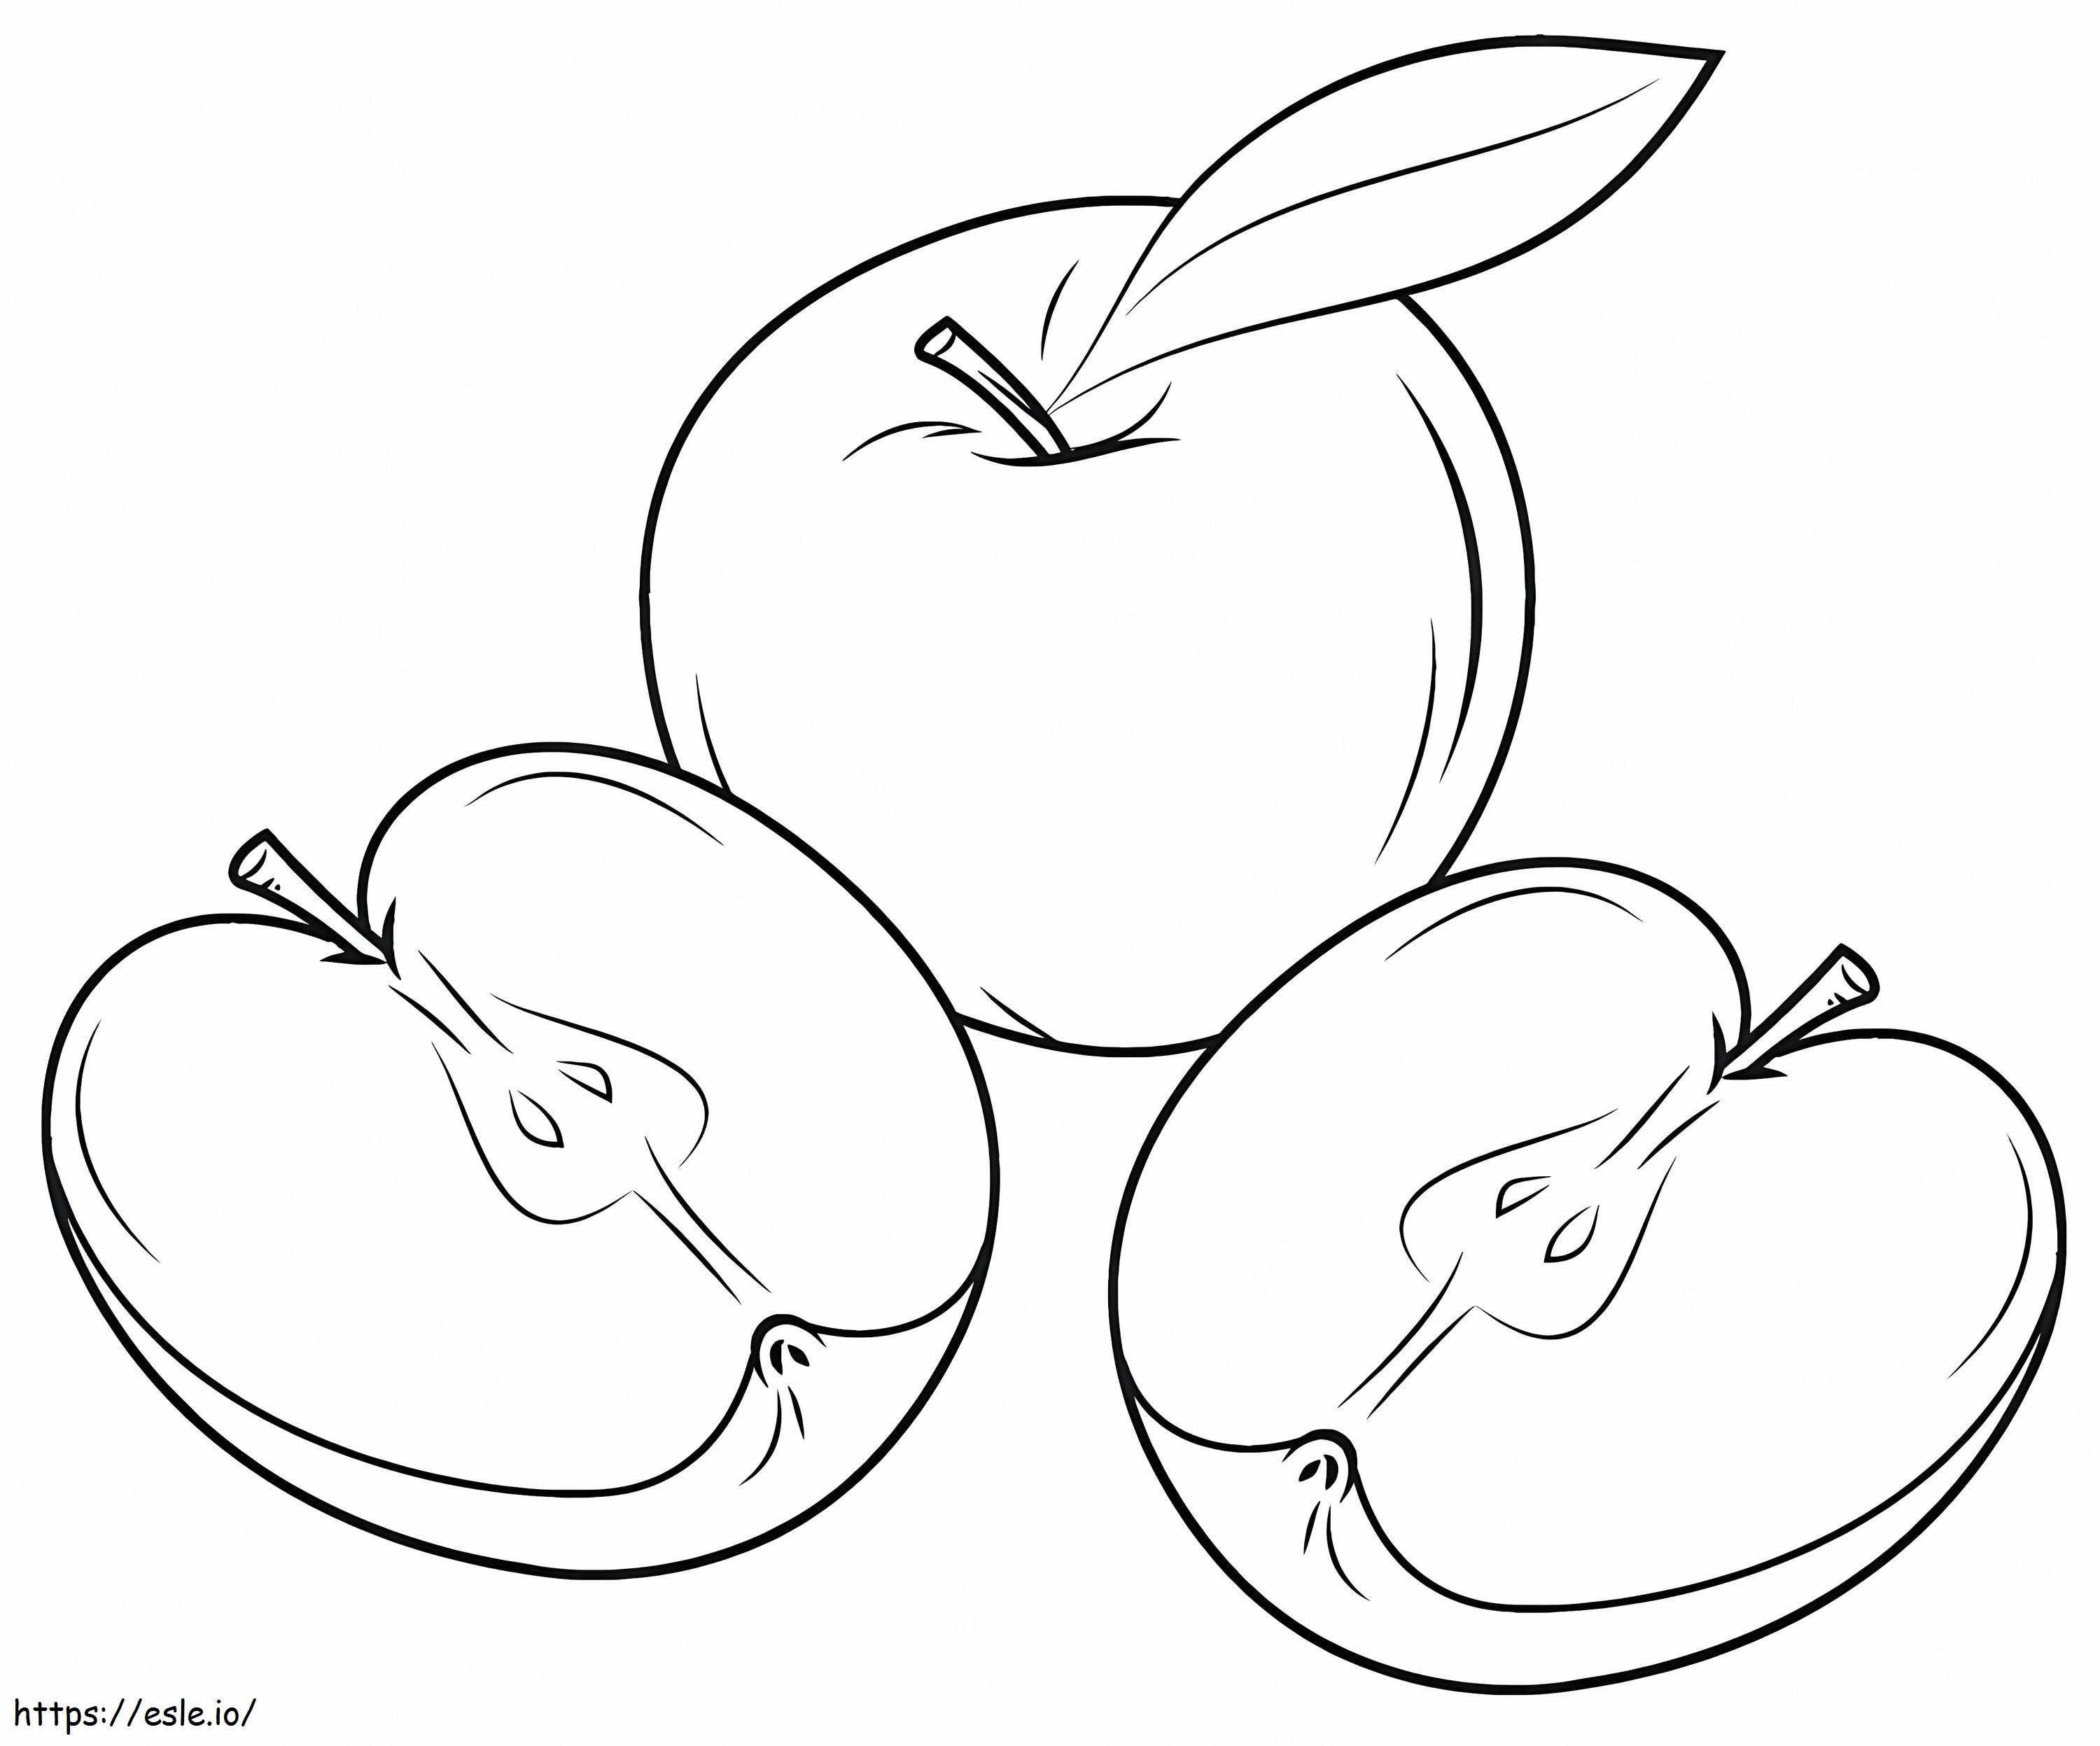 Una manzana y dos rodajas de manzana para colorear